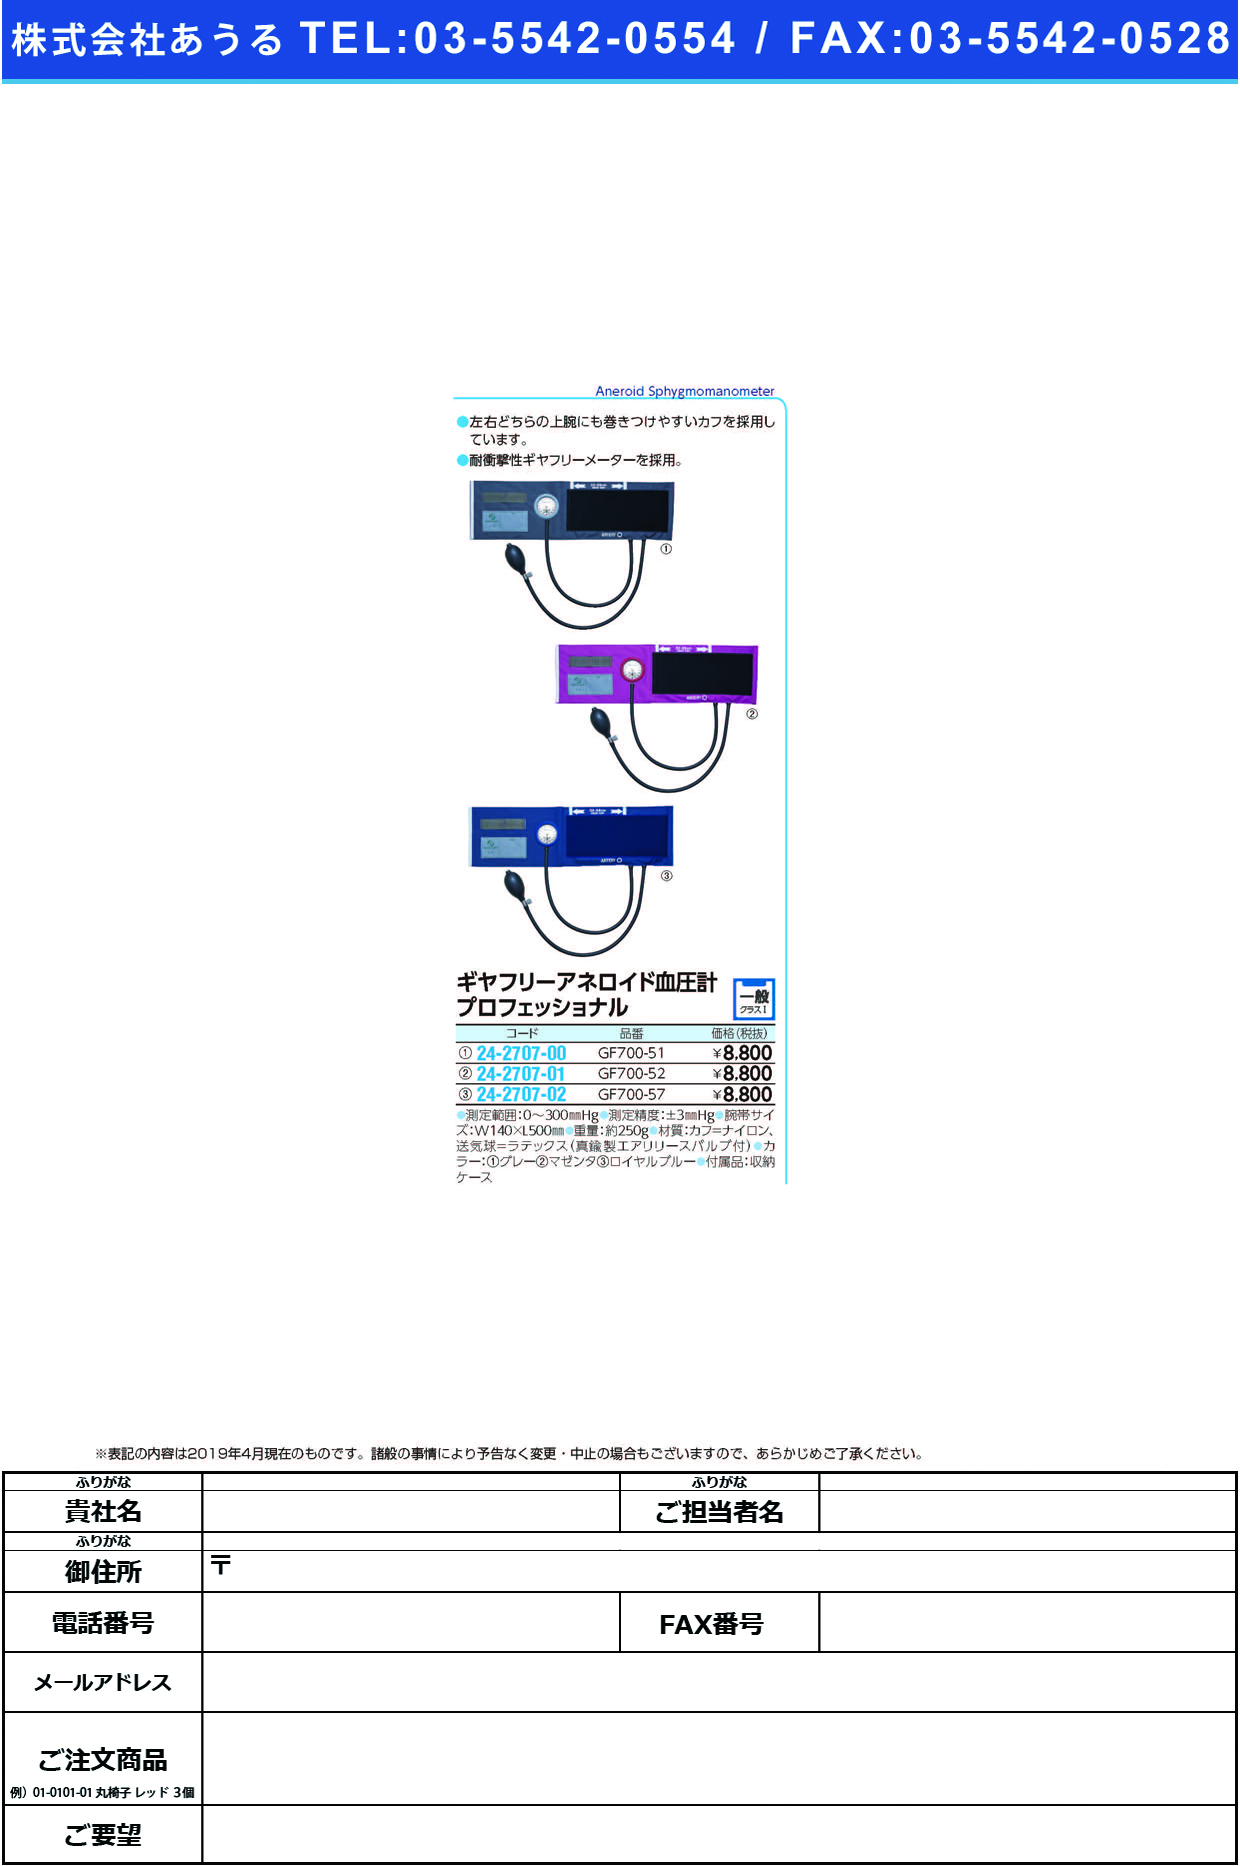 (24-2707-02)ギヤフリー血圧計プロフェッショナル GF700-57(ﾛｲﾔﾙﾌﾞﾙｰ) ｷﾞﾔﾌﾘｰｹﾂｱﾂｹｲﾌﾟﾛﾌｪｯｼ【1台単位】【2019年カタログ商品】